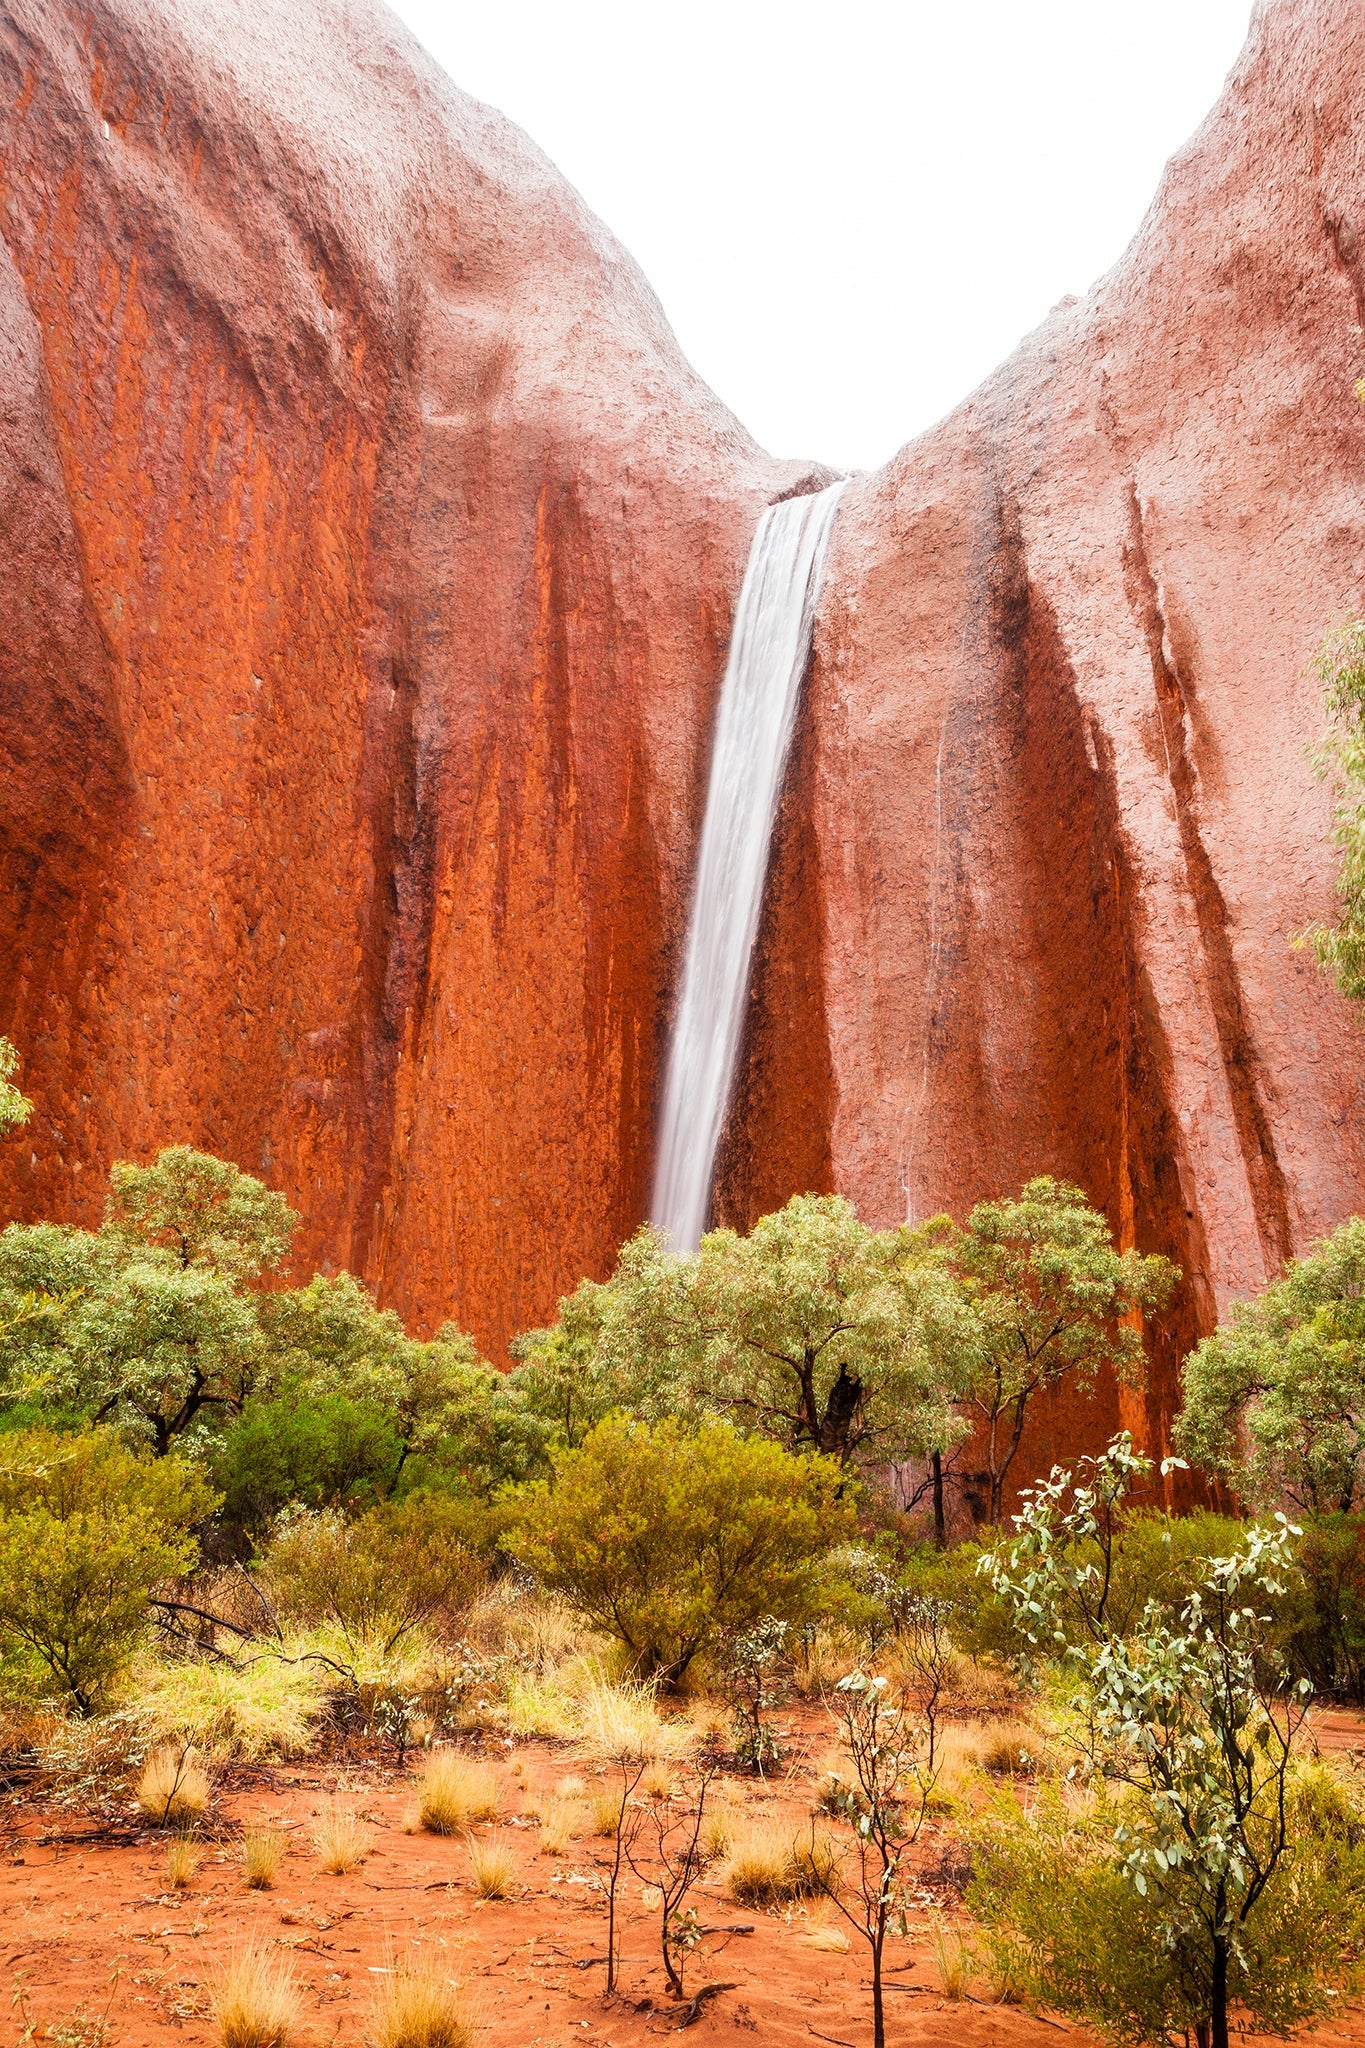 The great drop - Uluru (Ayers Rock) Northern Territory